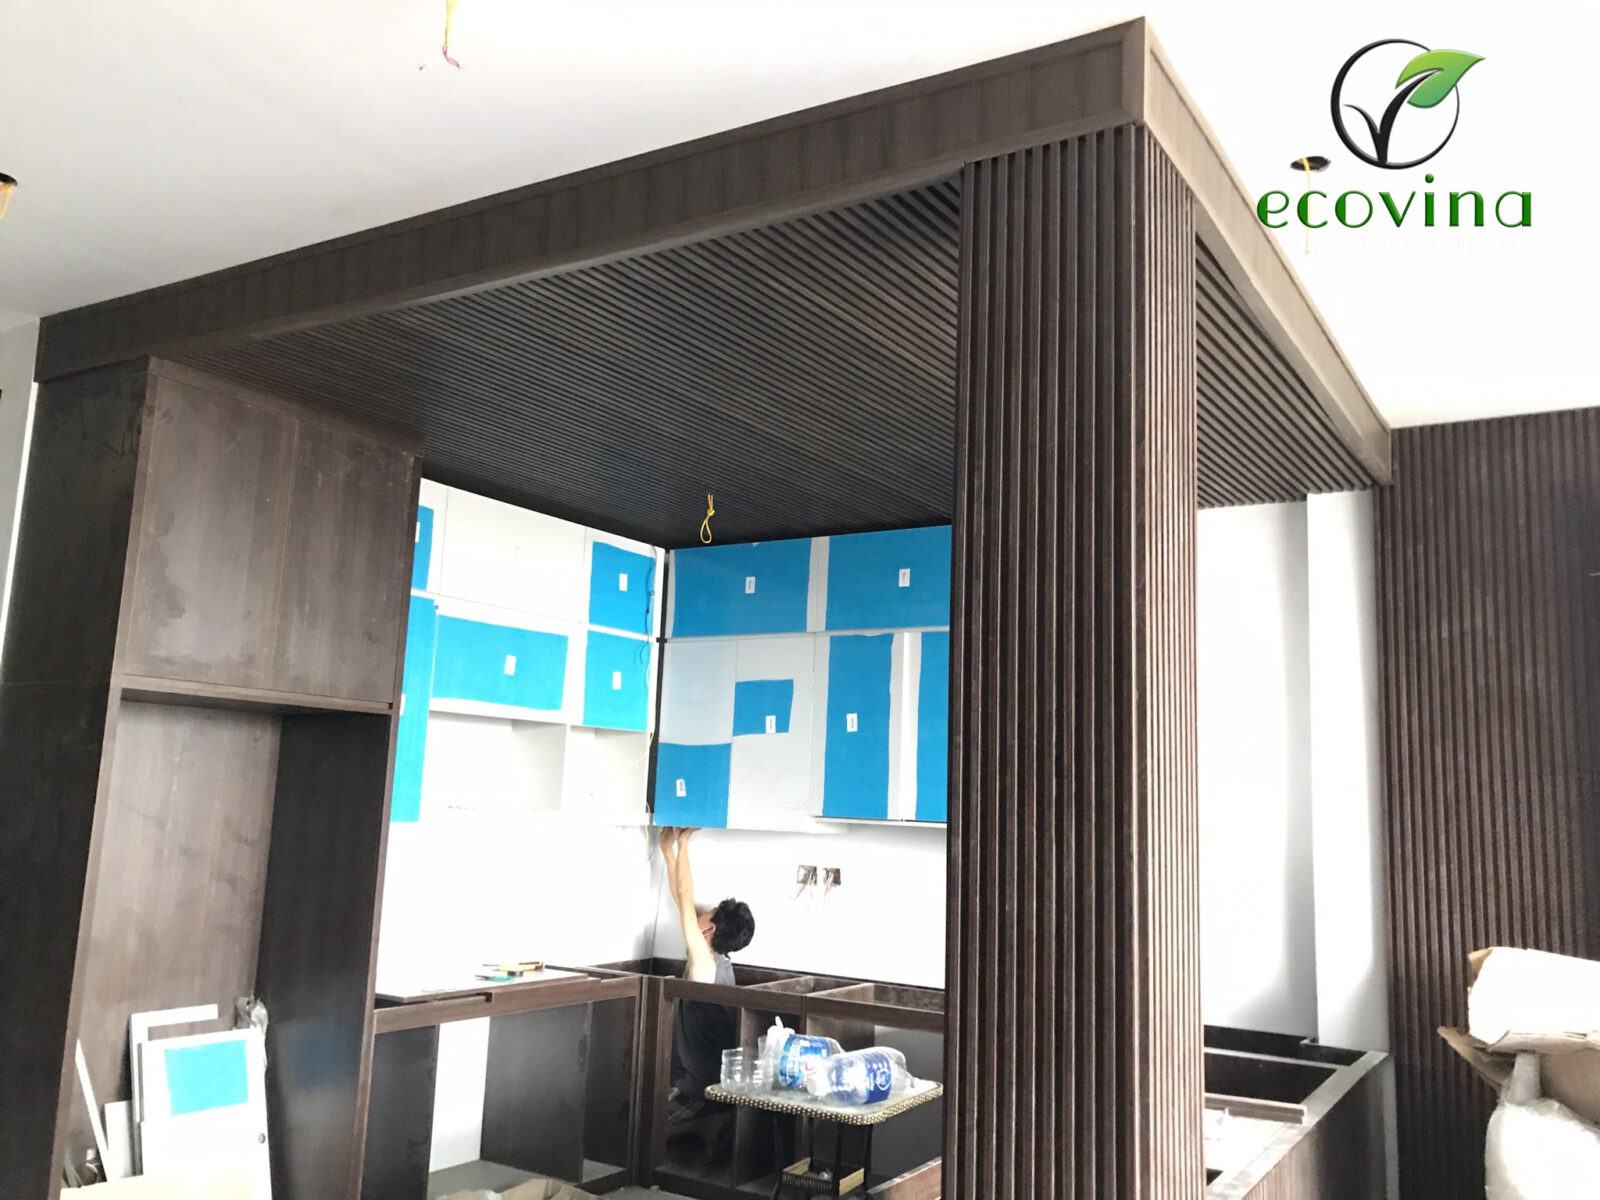 Thi công tấm ốp gỗ nhựa composite Ecovina tại Hà Nội 2021